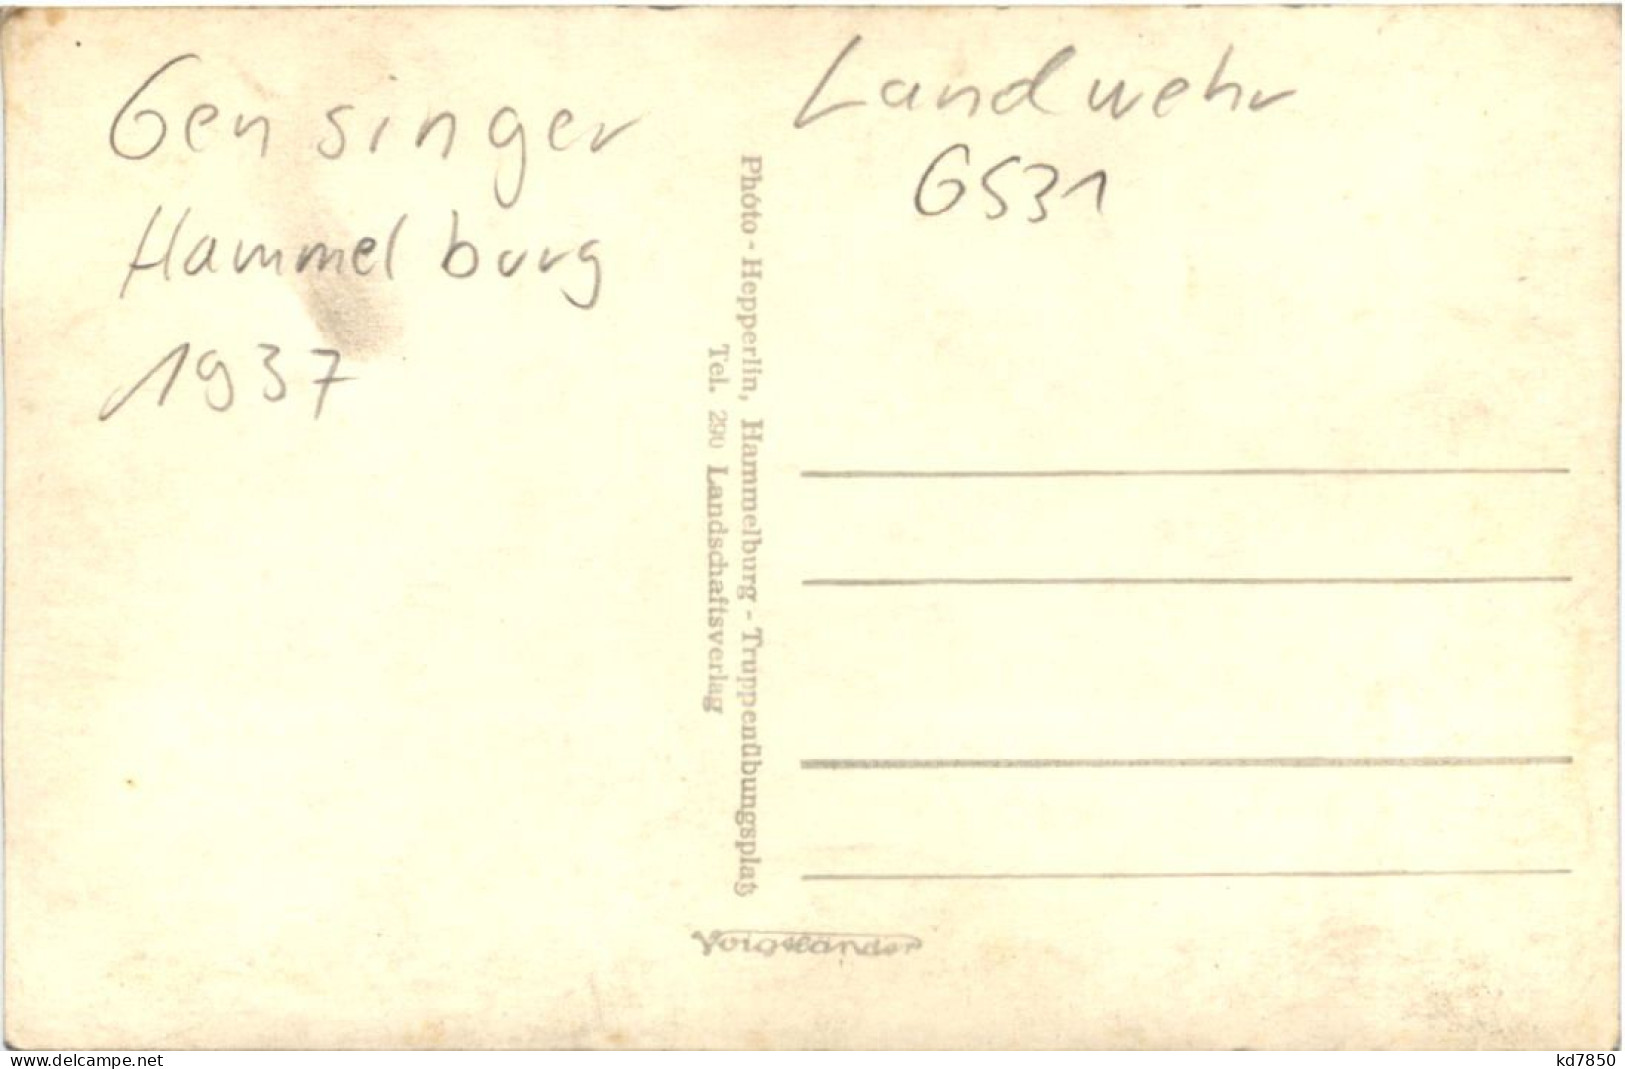 Gensinger Landwehr Hammelburg 1937 - 3. Reich - Gensingen - Hammelburg